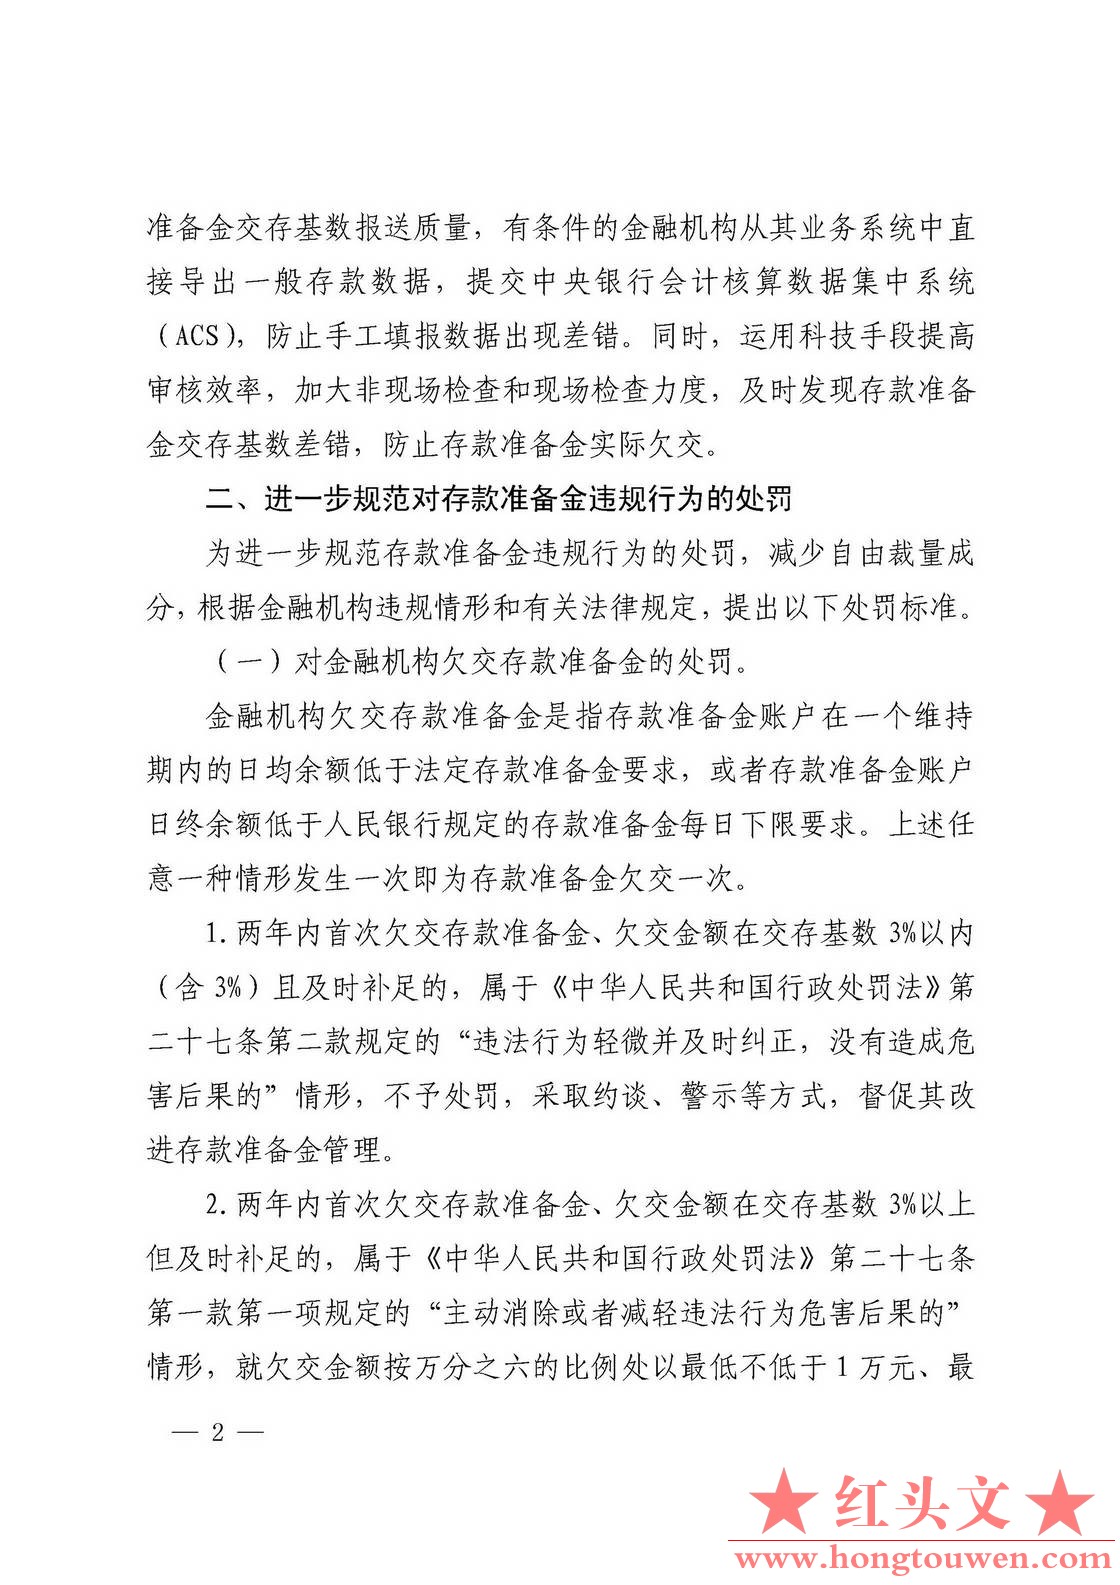 银发[2018]297号-中国人民银行关于加强存款准备金管理有关事项的通知_页面_2.jpg.jpg